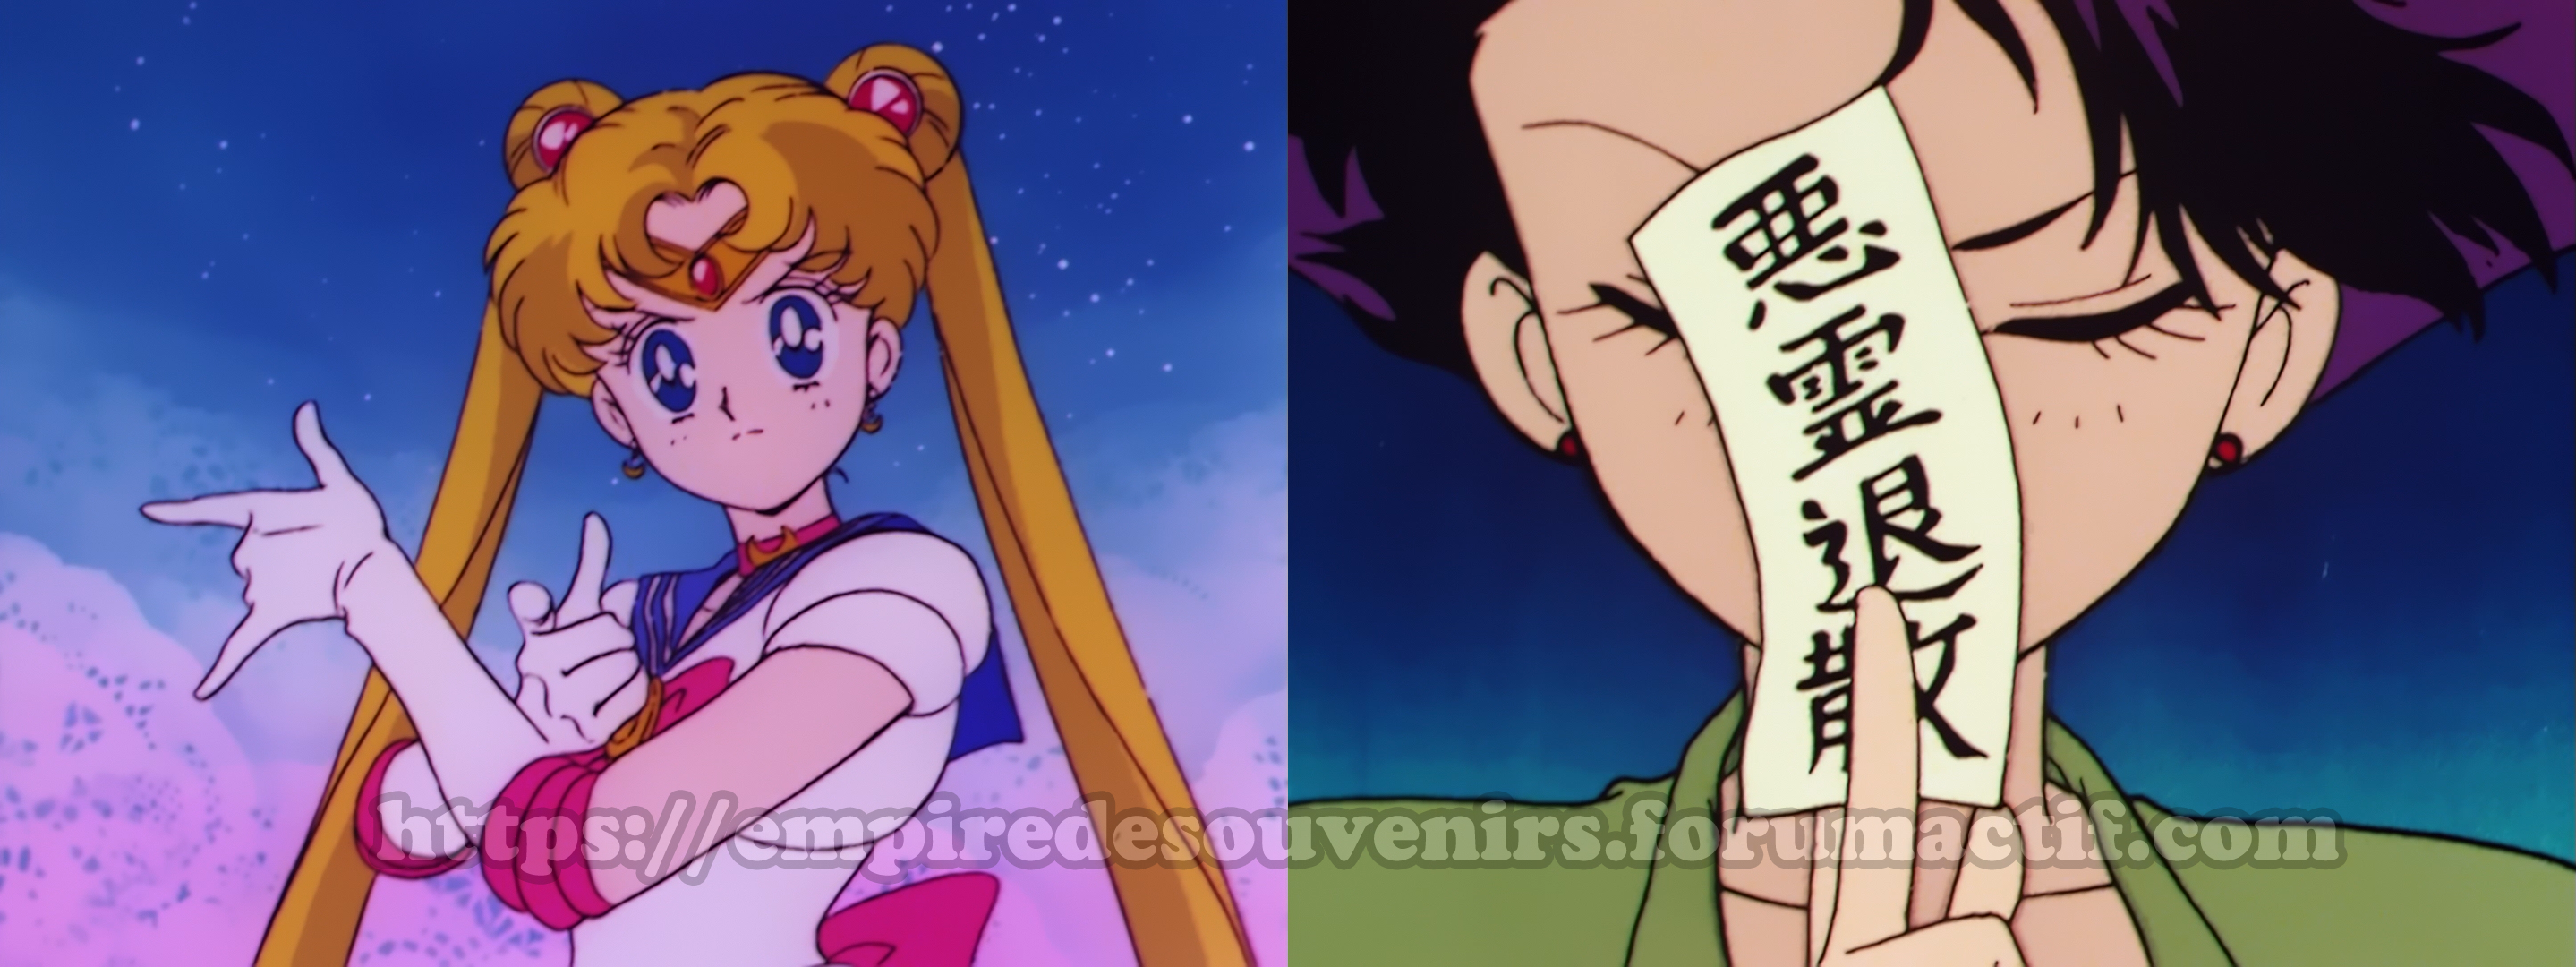 [Dossier] Les censures dans Sailor Moon Em3p